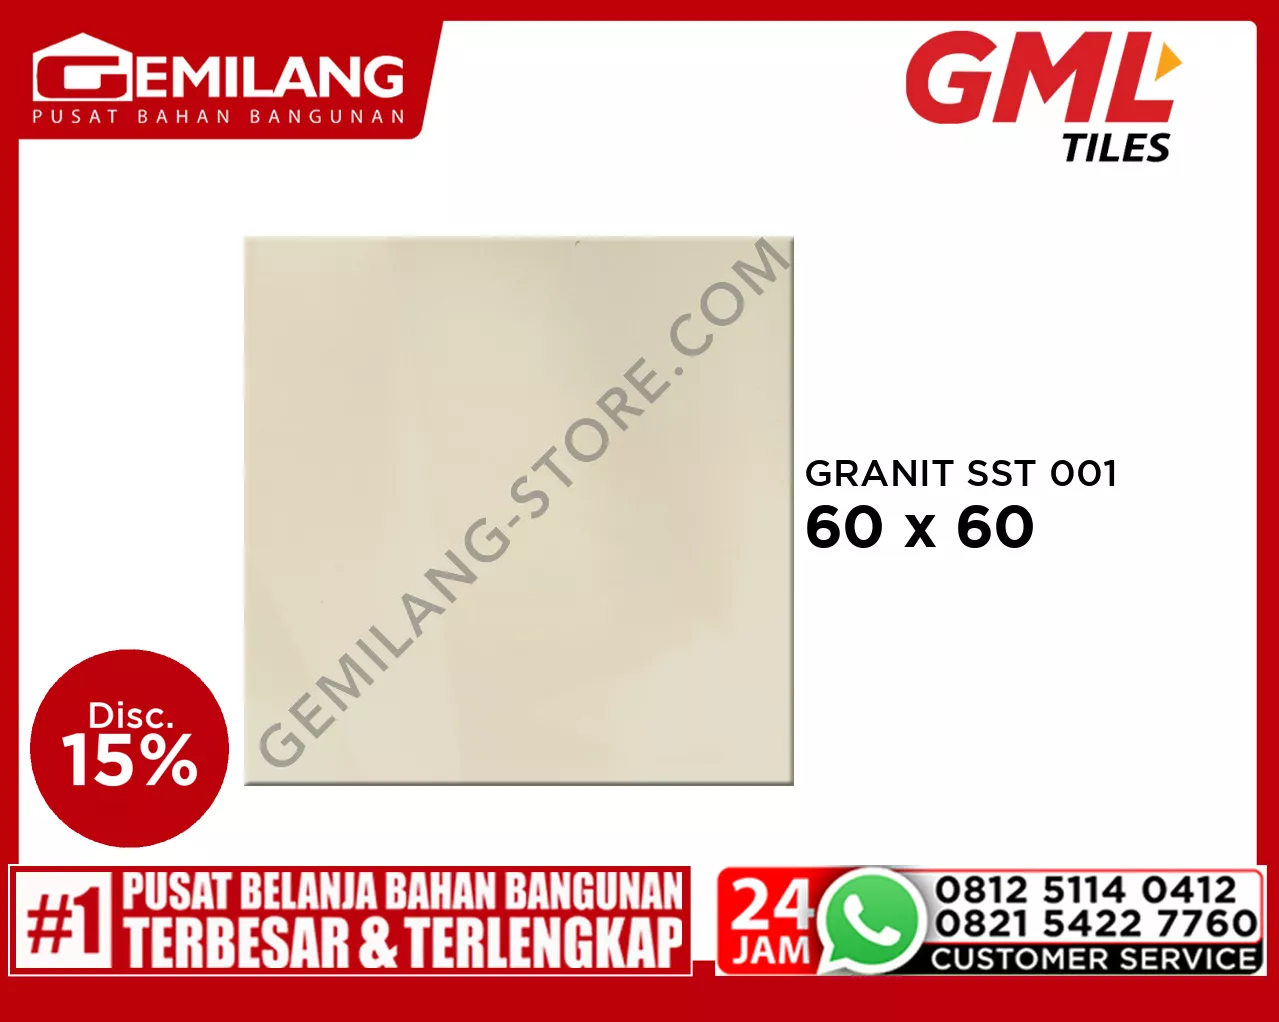 GML GRANIT SST 001 60 x 60